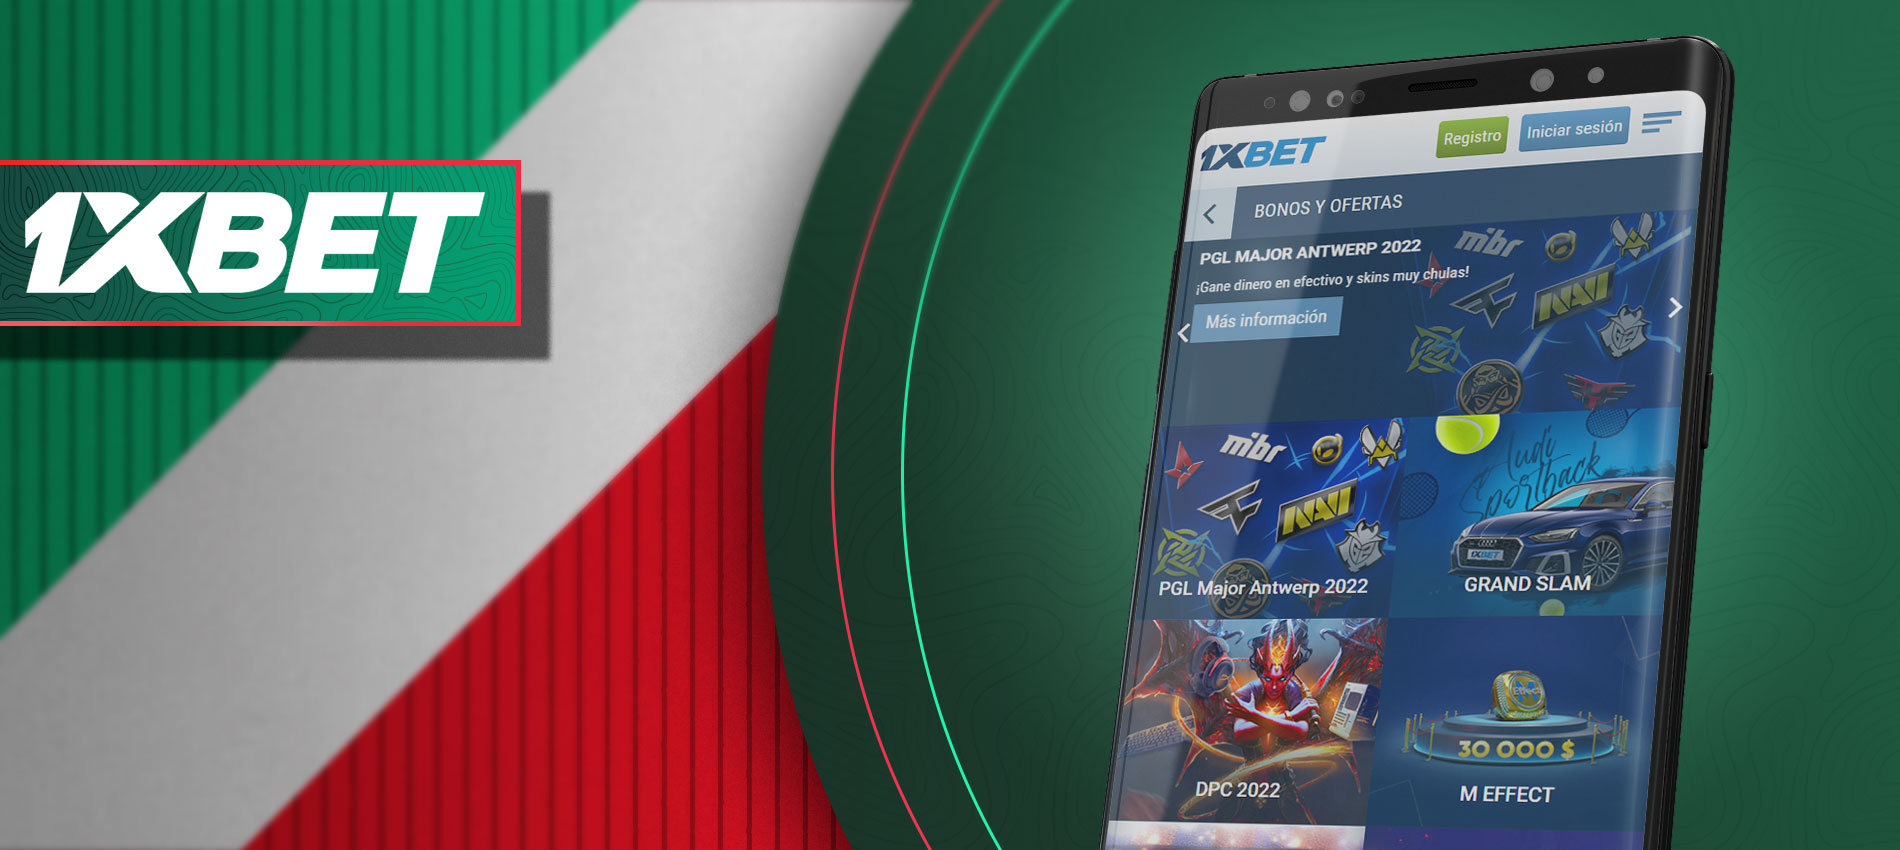 1xbet es una de las mejores aplicaciones entre todas las aplicaciones de apuestas mexicanas por la versión appteca.app4citizens.